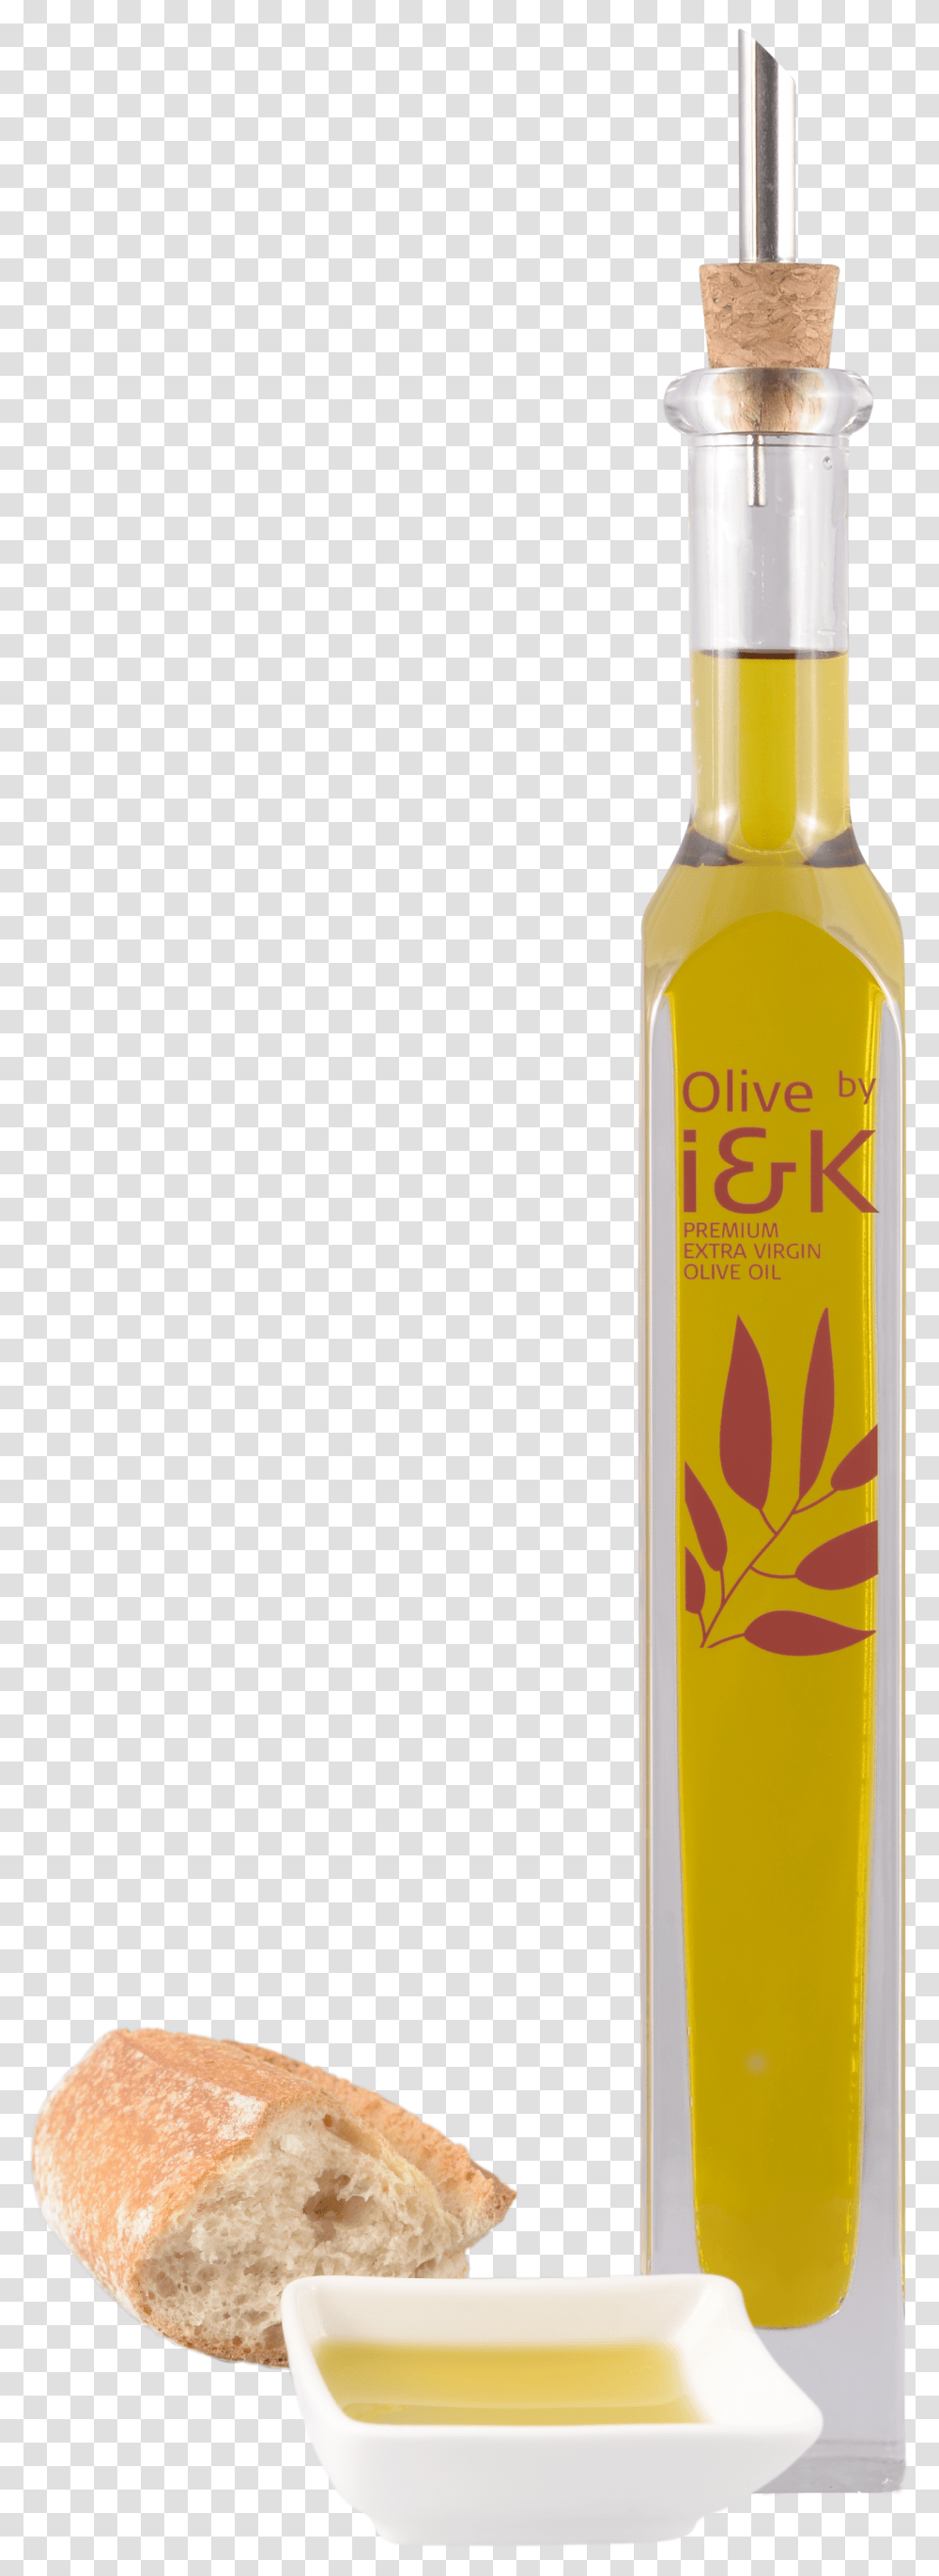 Olive By I&k Press, Liquor, Alcohol, Beverage, Drink Transparent Png